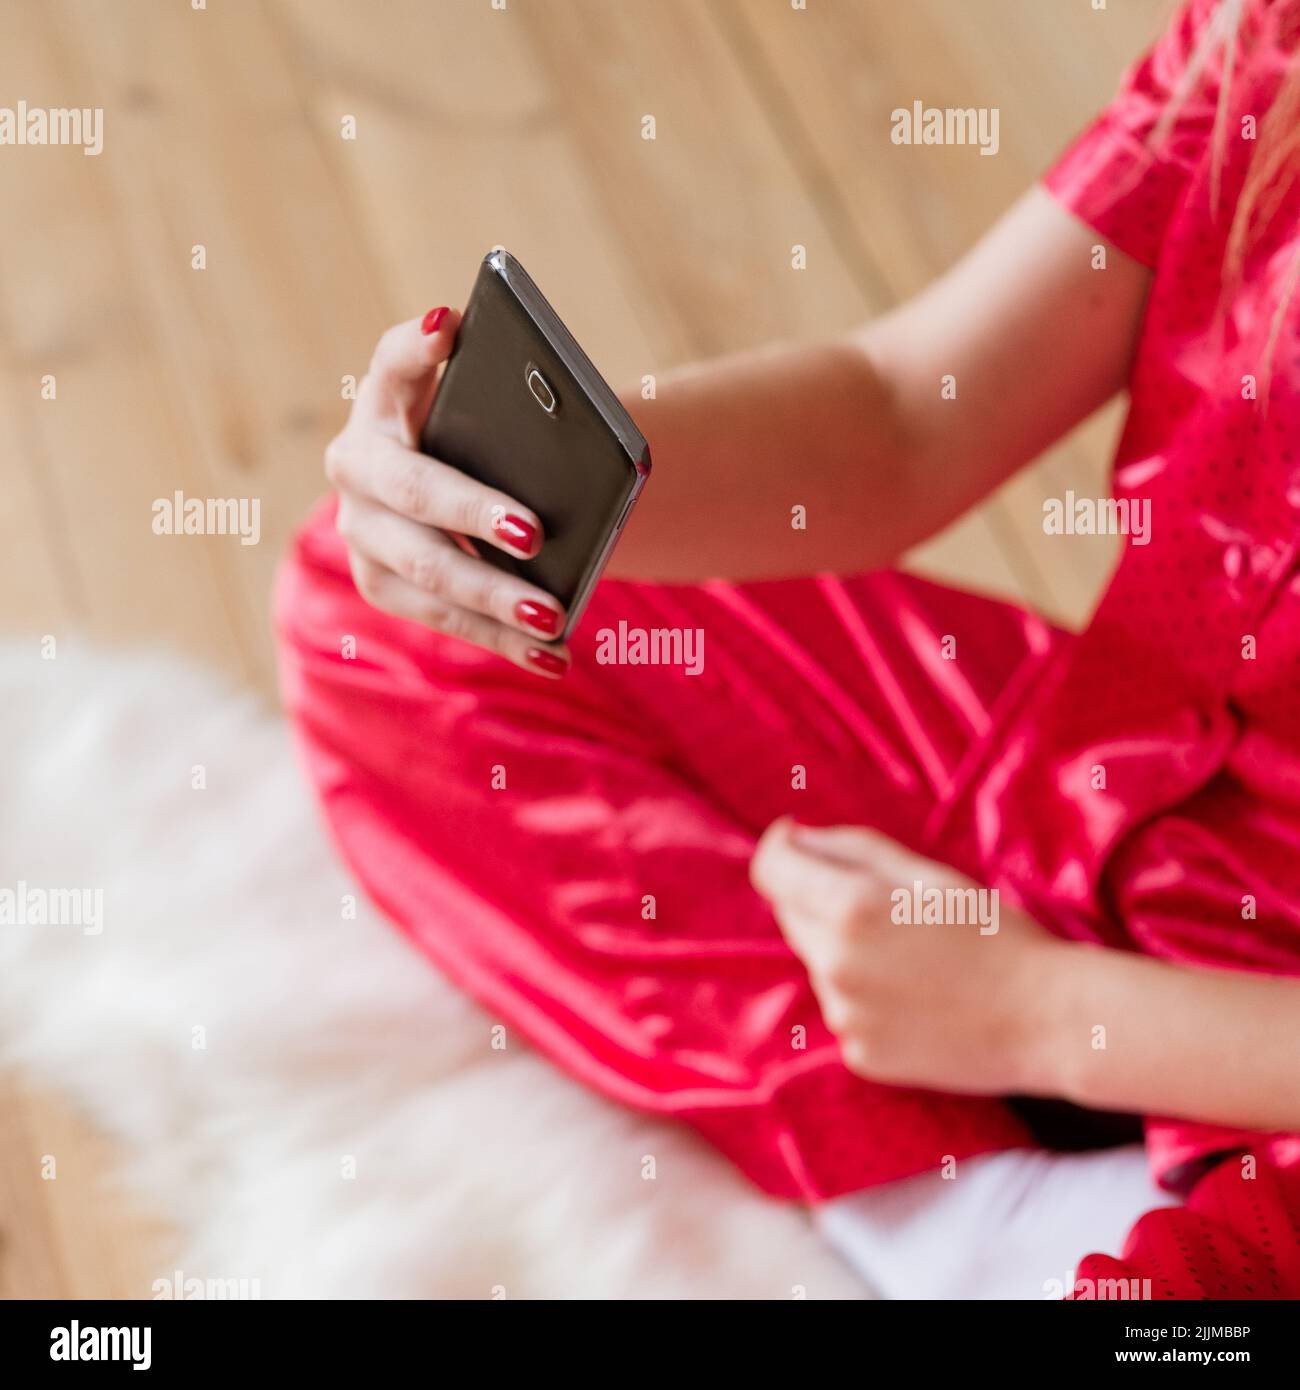 smartphone addiction woman pyjamas take selfie Stock Photo